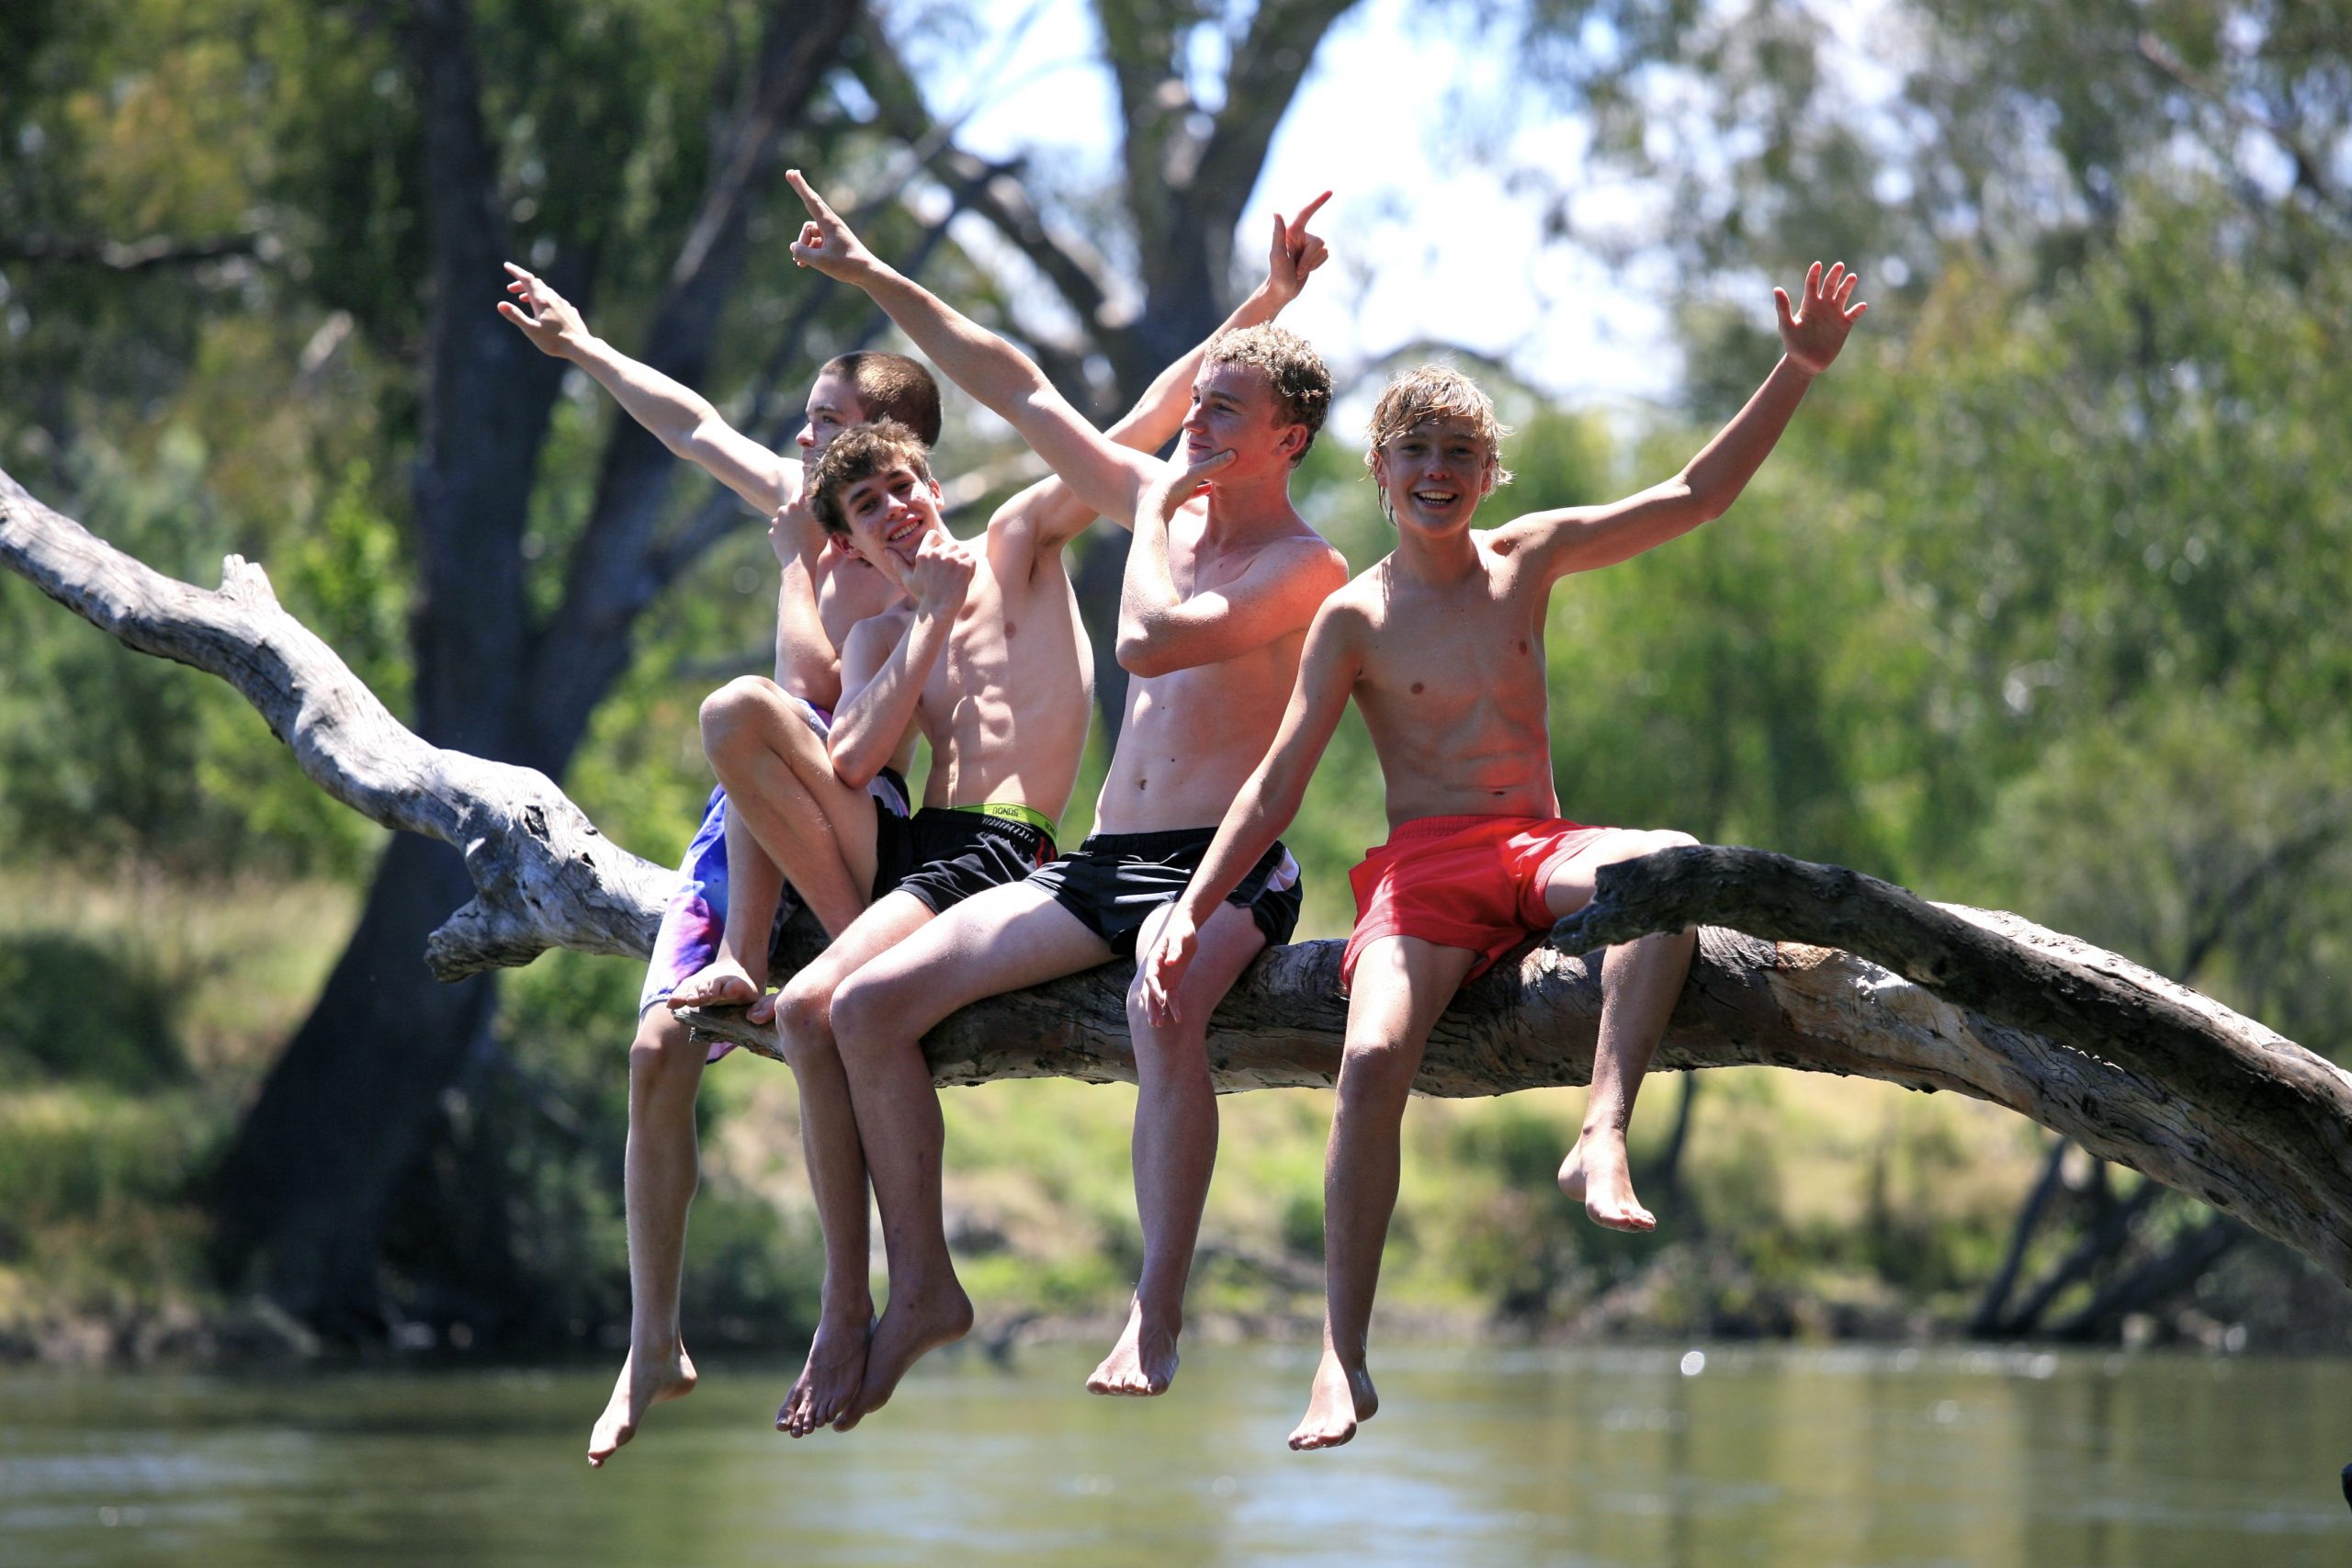 Teenagers playing at a lake.